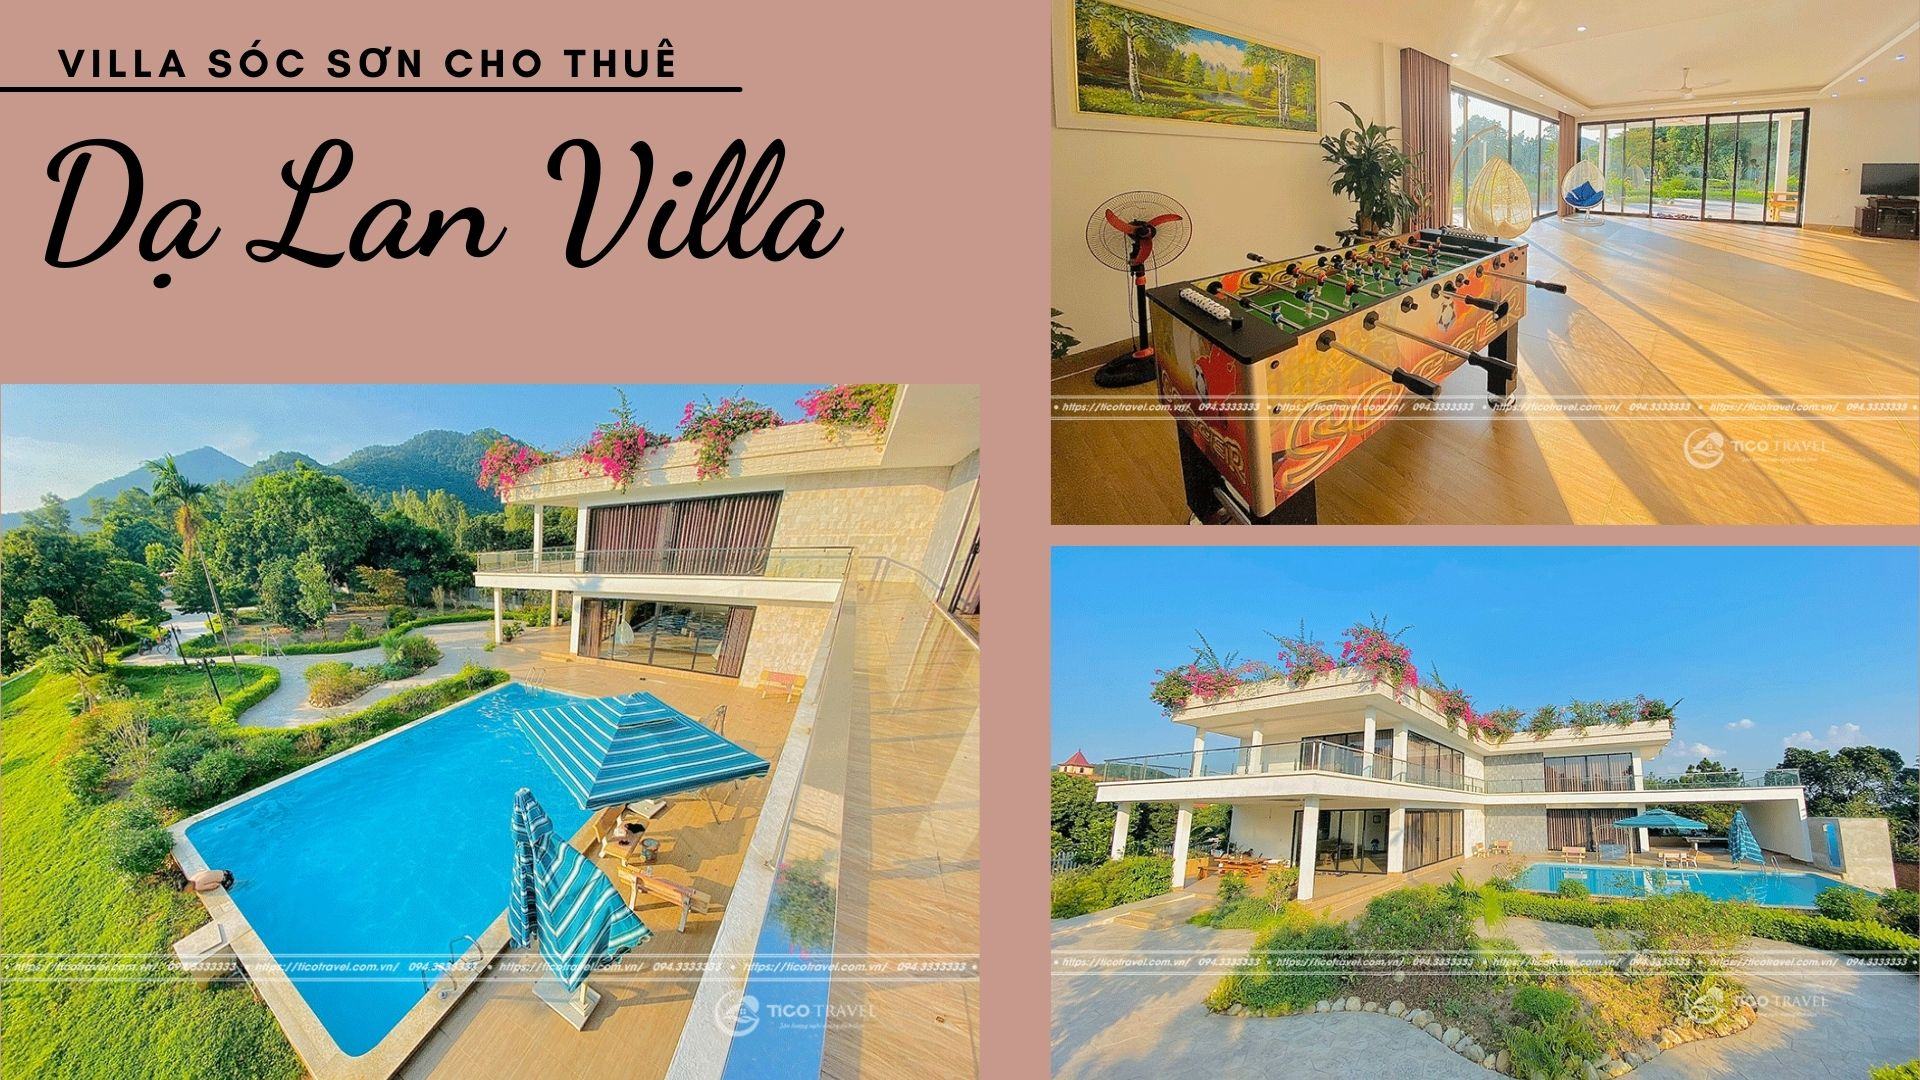 Ảnh chụp Dạ Lan Villa - Villa nghỉ dưỡng giá rẻ siêu đẹp tại Sóc Sơn 